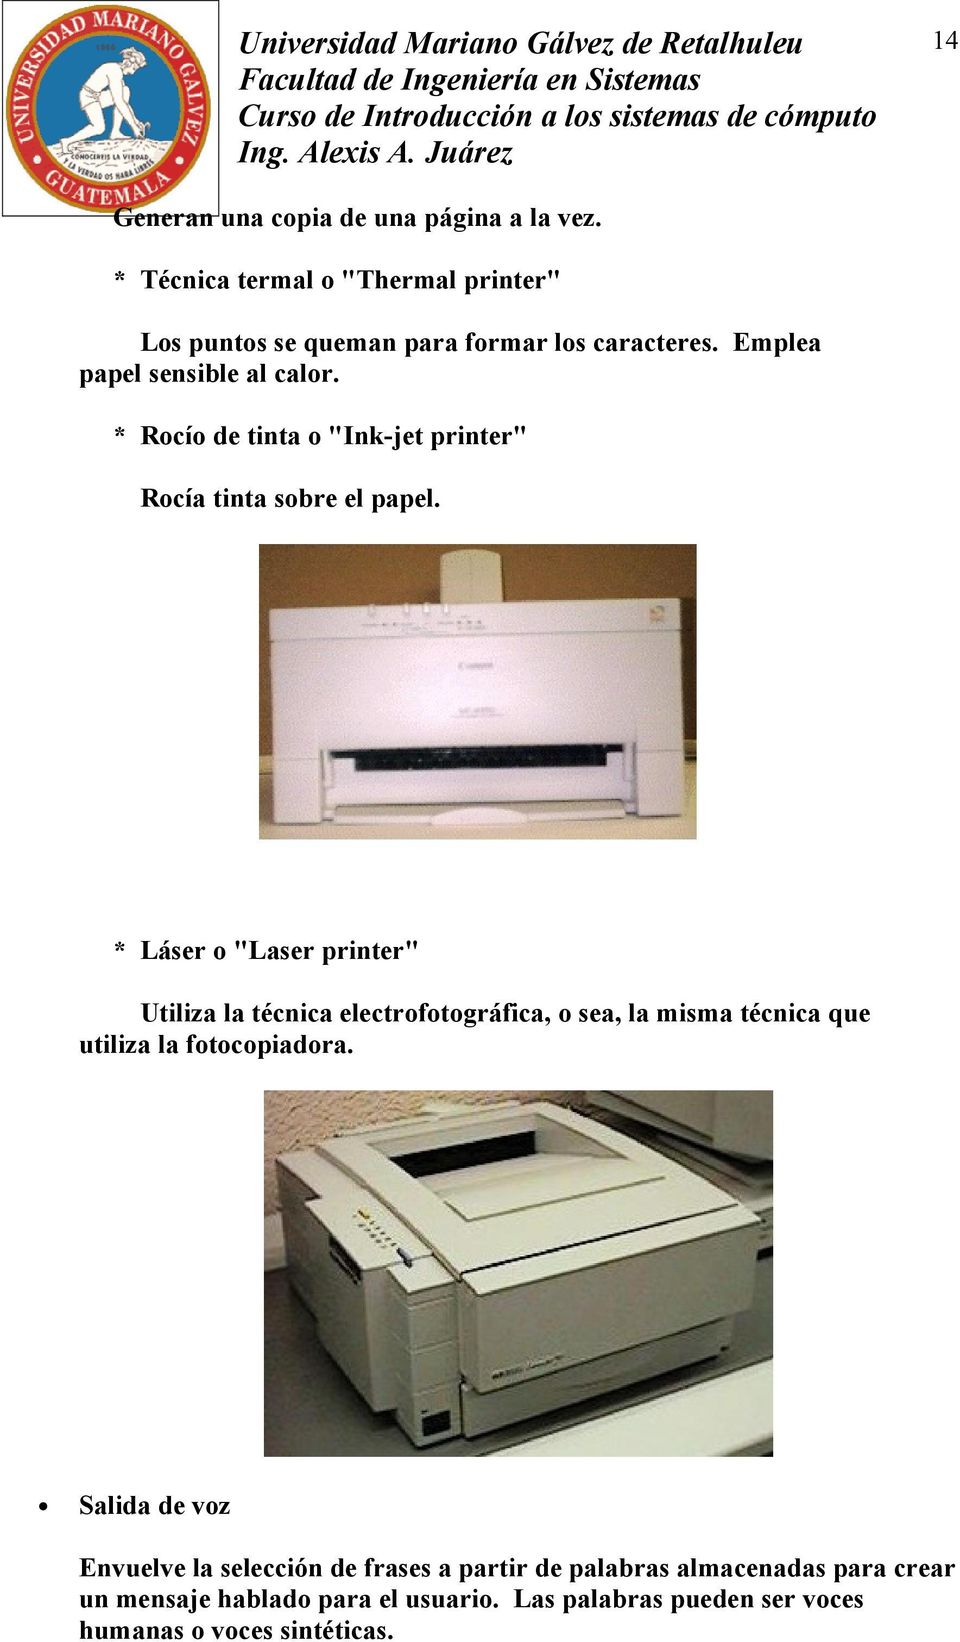 * Láser o "Laser printer" Utiliza la técnica electrofotográfica, o sea, la misma técnica que utiliza la fotocopiadora.